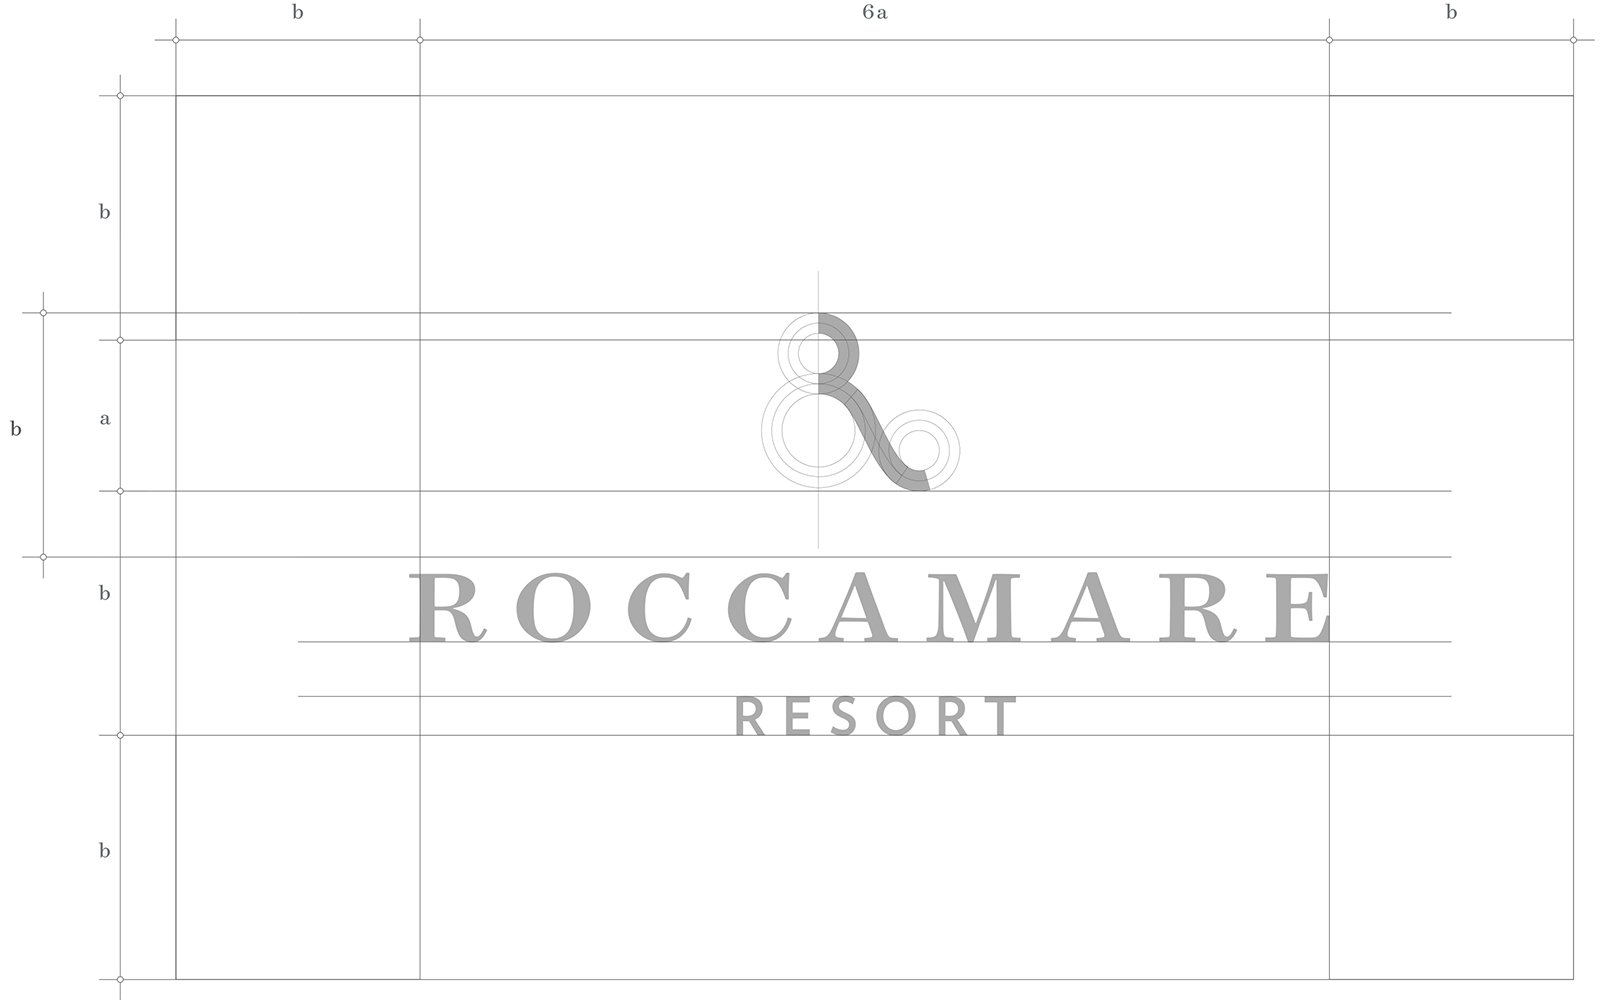 Neues Image für das Resort Roccamare